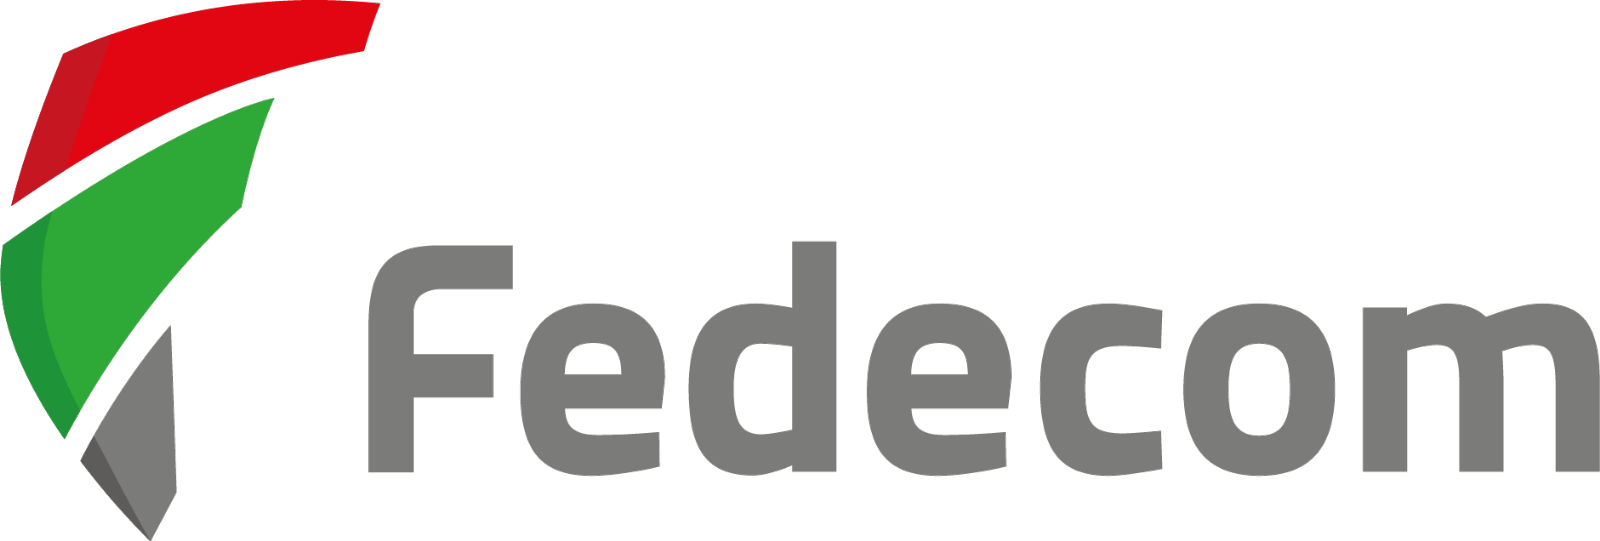 Fedecom logo